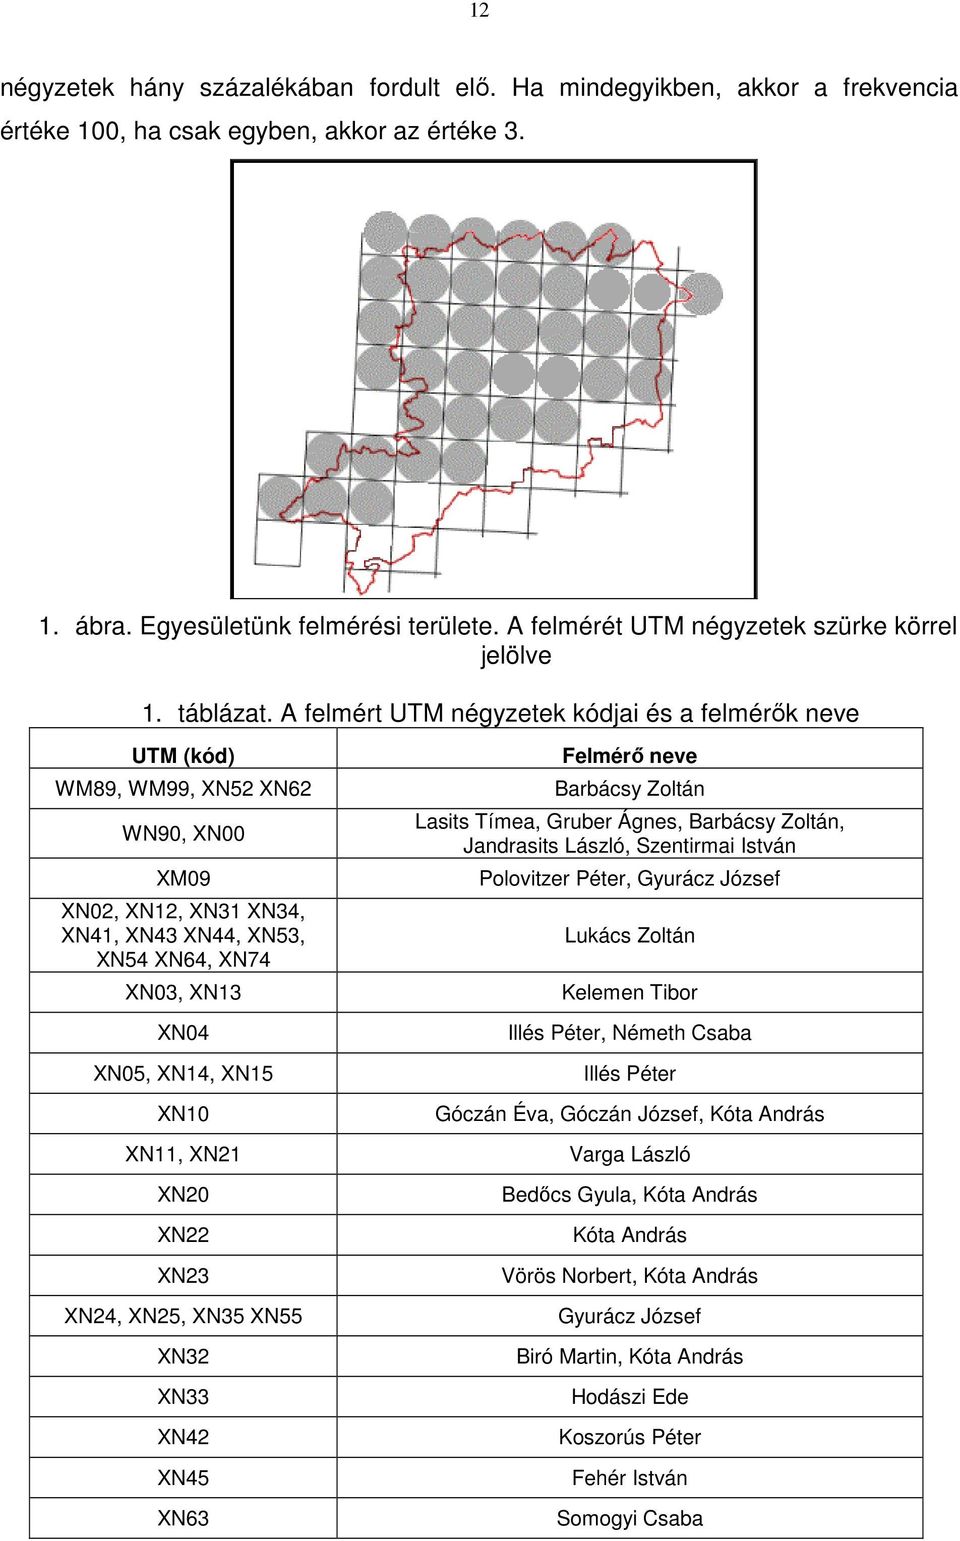 A felmért UTM négyzetek kódjai és a felmérők neve UTM (kód) WM89, WM99, XN52 XN62 WN90, XN00 XM09 XN02, XN12, XN31 XN34, XN41, XN43 XN44, XN53, XN54 XN64, XN74 XN03, XN13 XN04 XN05, XN14, XN15 XN10